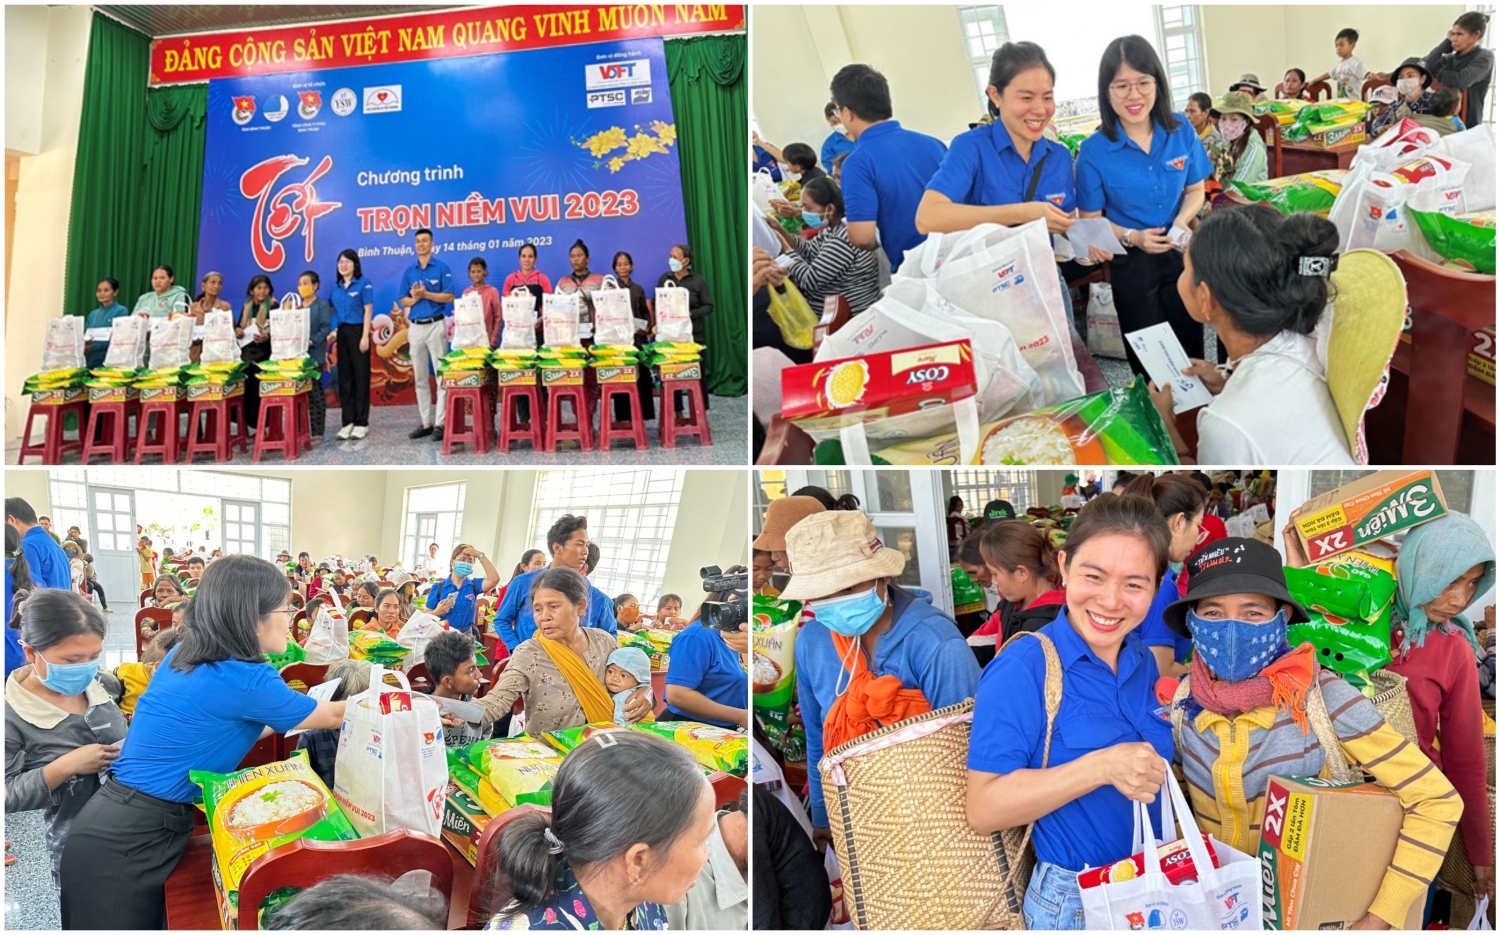 Tuổi trẻ PTSC mang “Tết trọn niềm vui 2023” đến Ninh Thuận và Bình Thuận